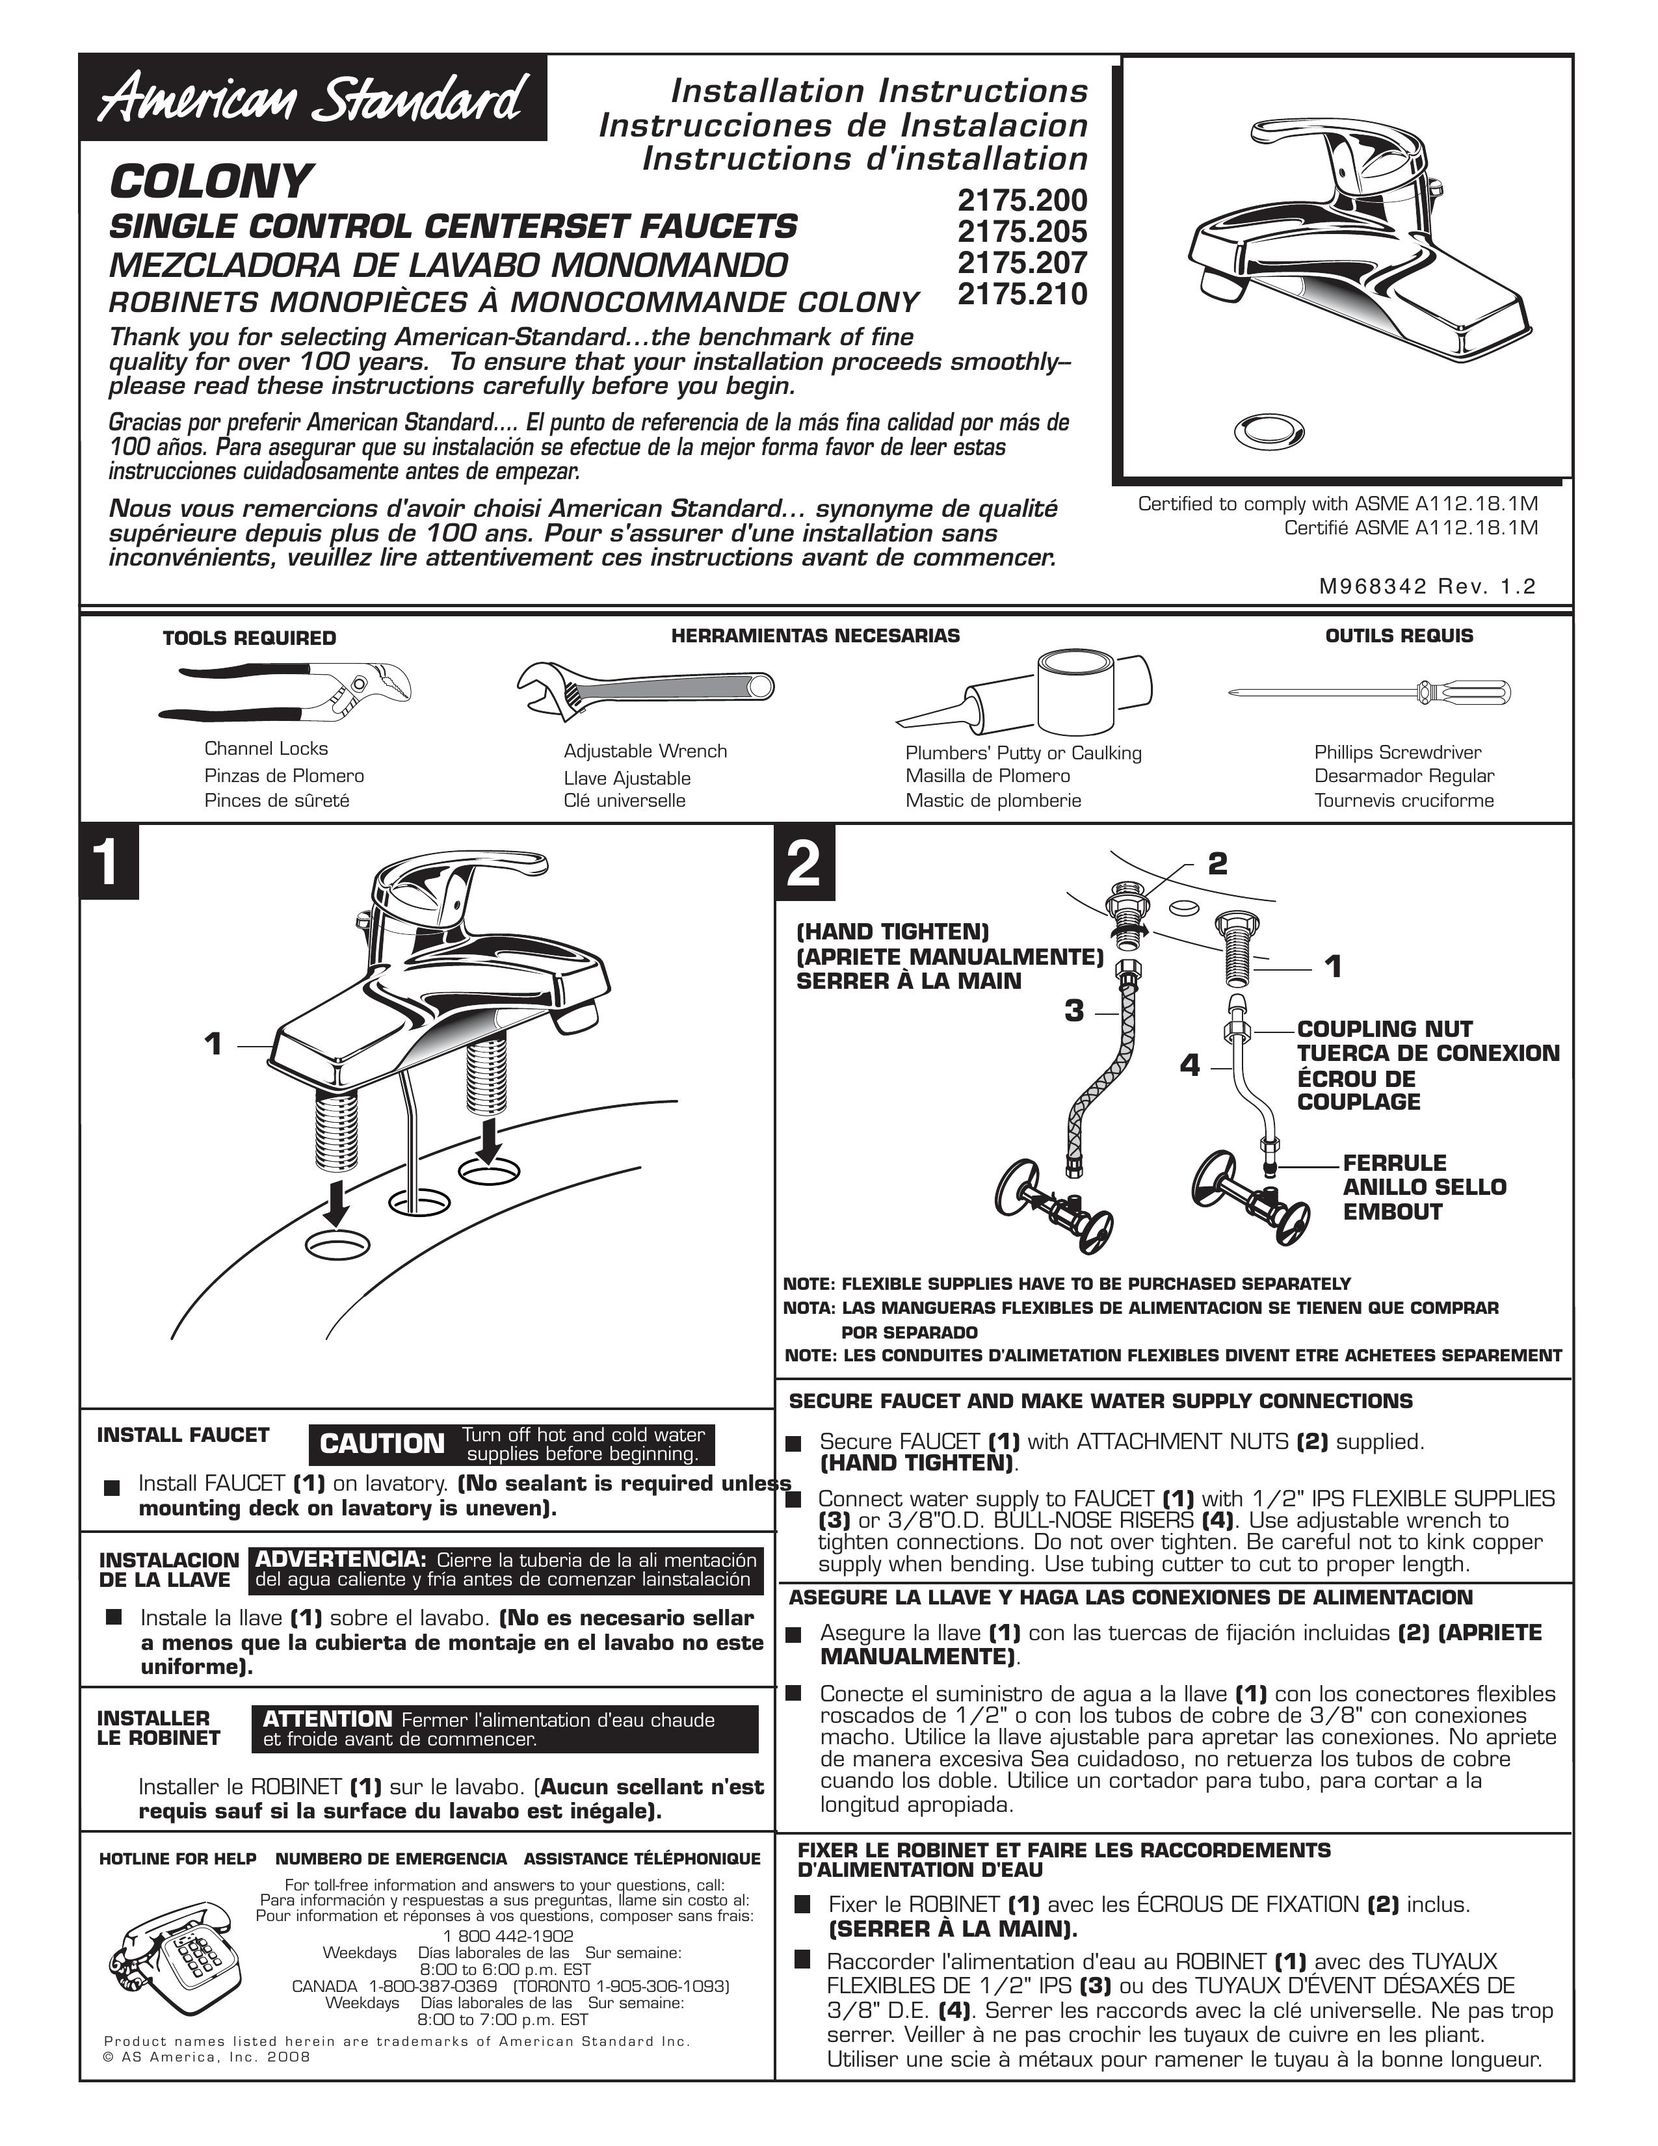 American Standard 2175.205 Plumbing Product User Manual